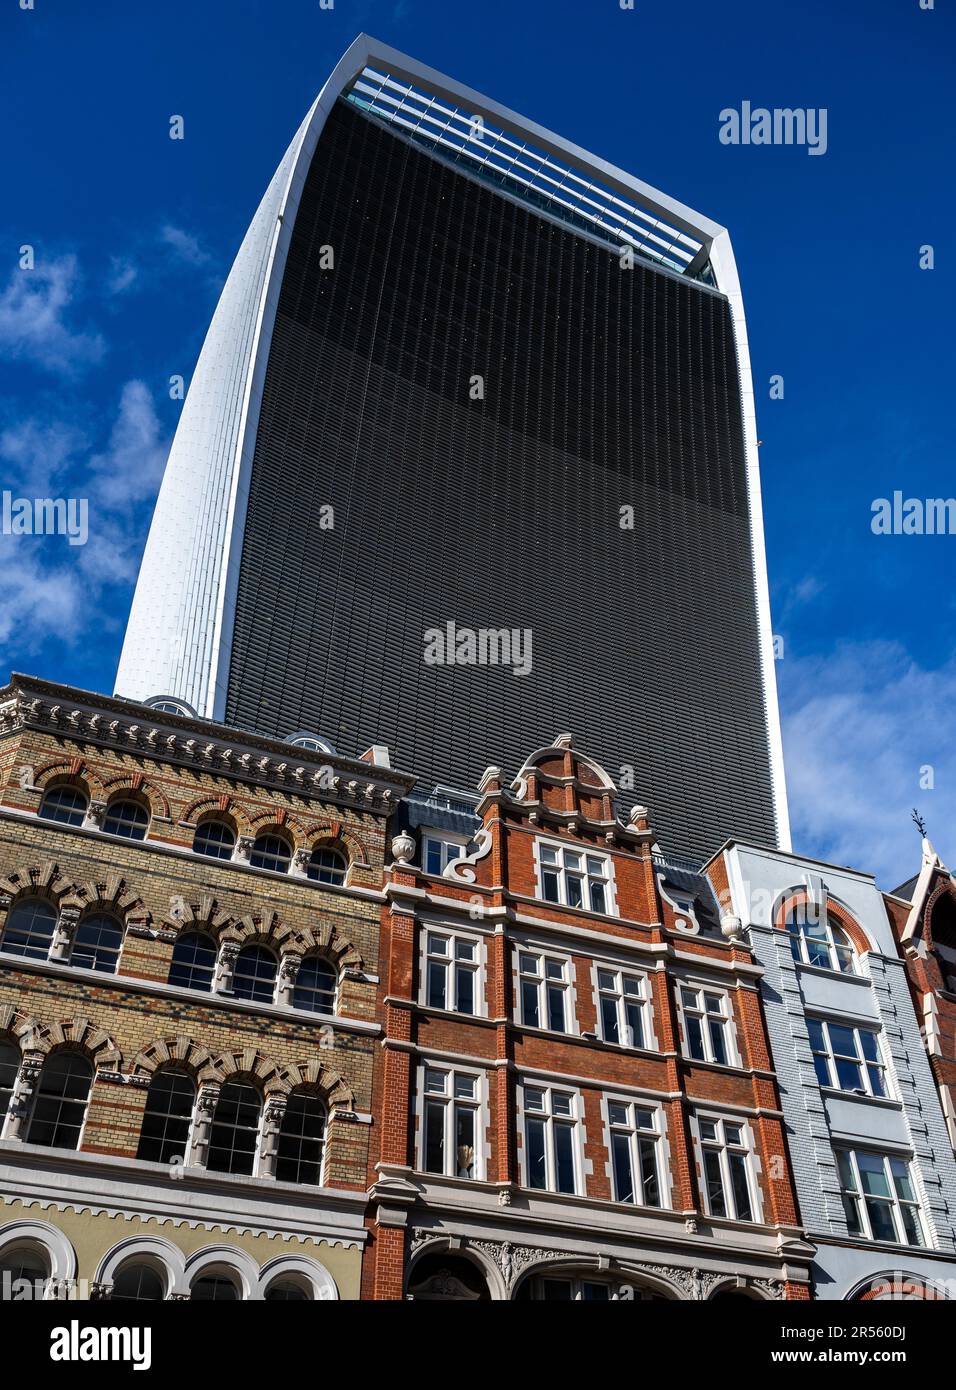 Londres, Royaume-Uni : le bâtiment Walkie-Talkie ou Fenchurch, situé au 20, rue Fenchurch, surplombe les anciens bâtiments. Bâtiments de Eastcheap en premier plan Banque D'Images